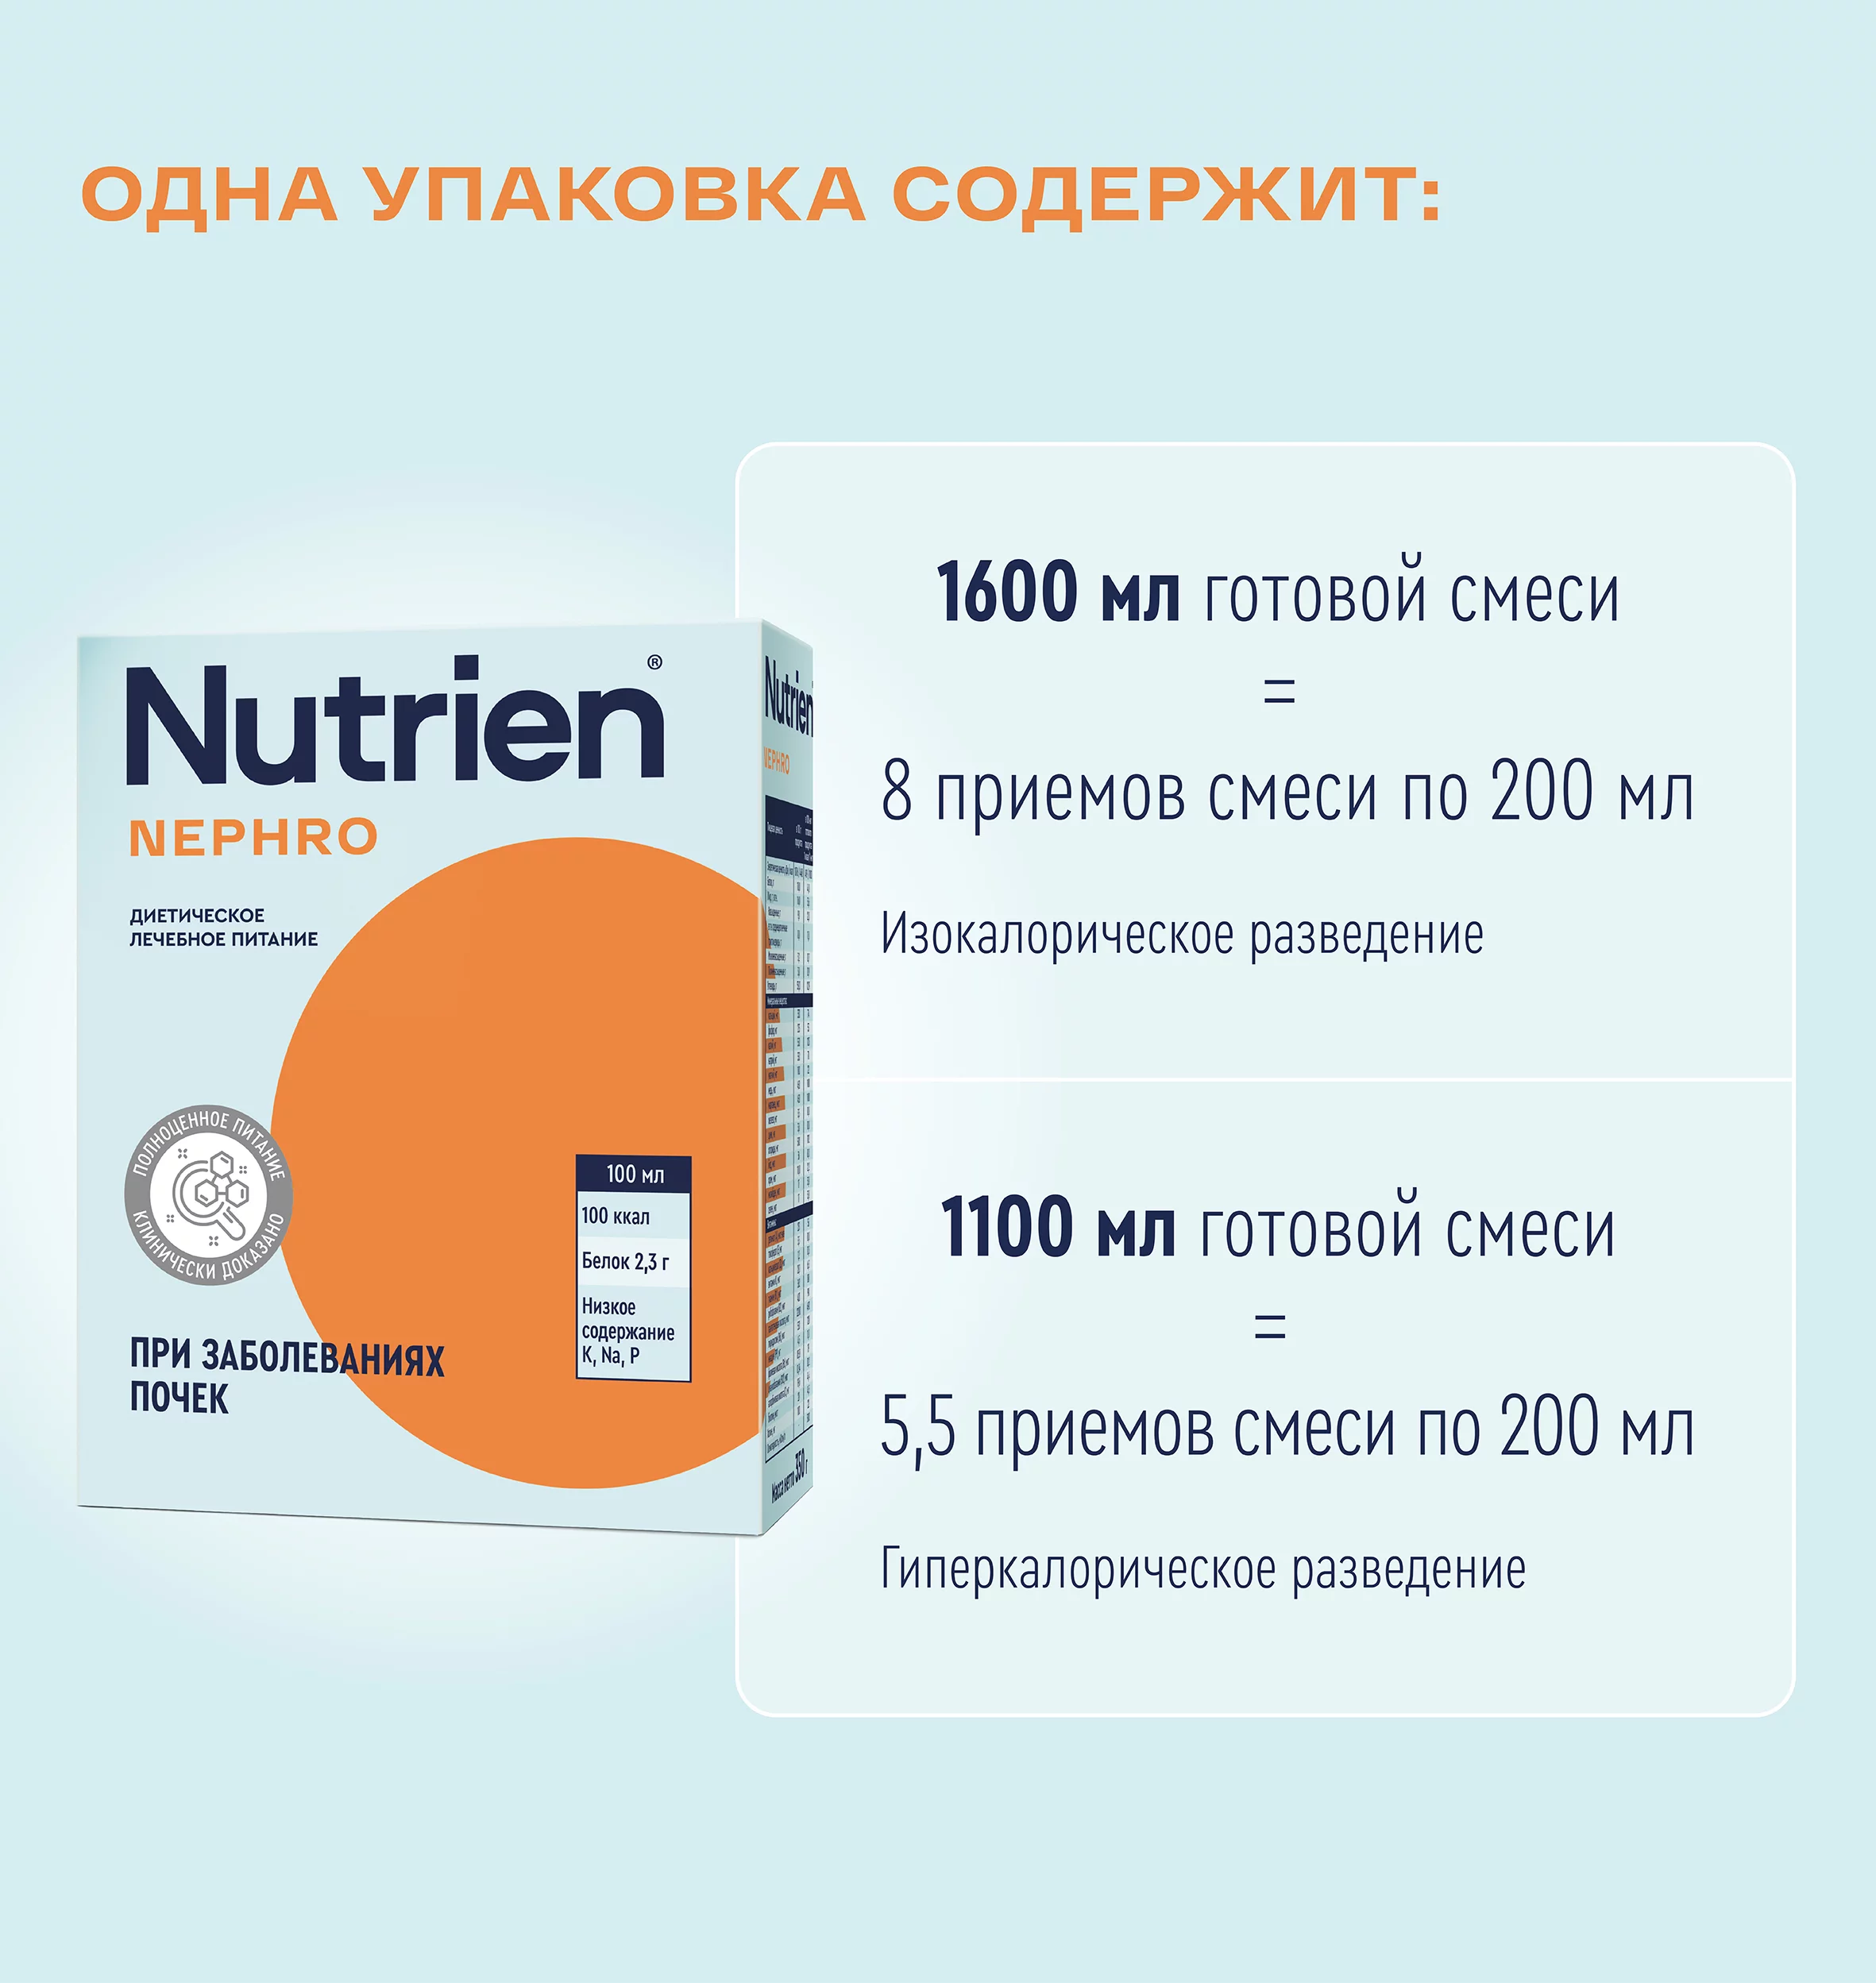 Nutrien Nephro - 6